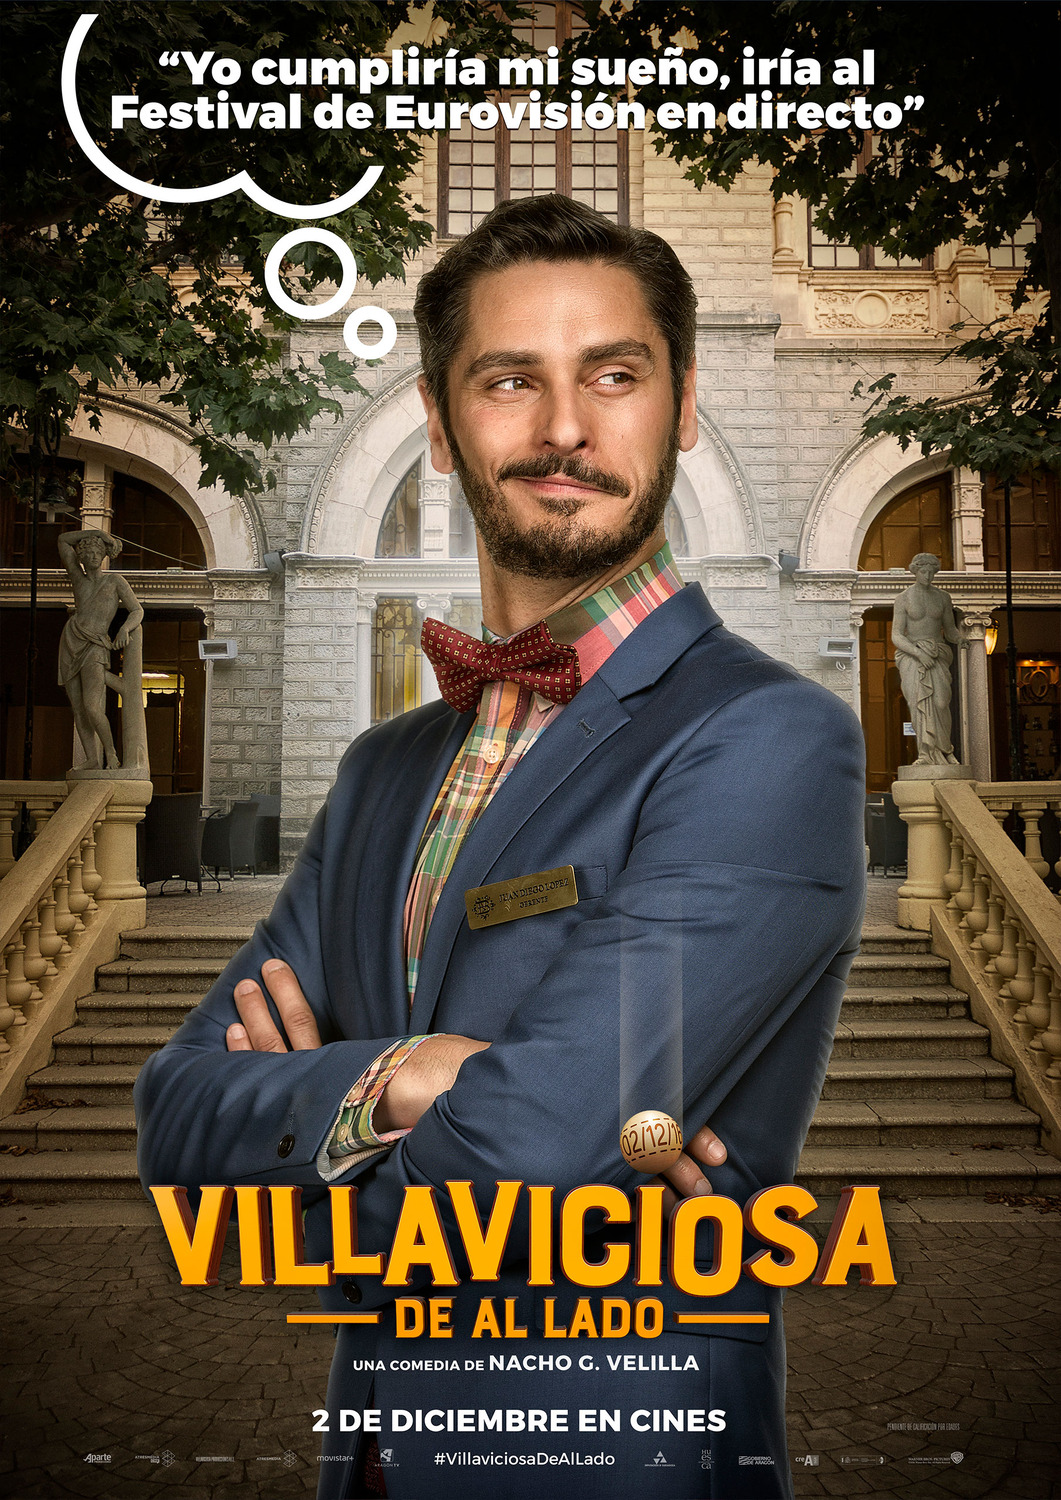 Extra Large Movie Poster Image for Villaviciosa de al lado (#4 of 8)